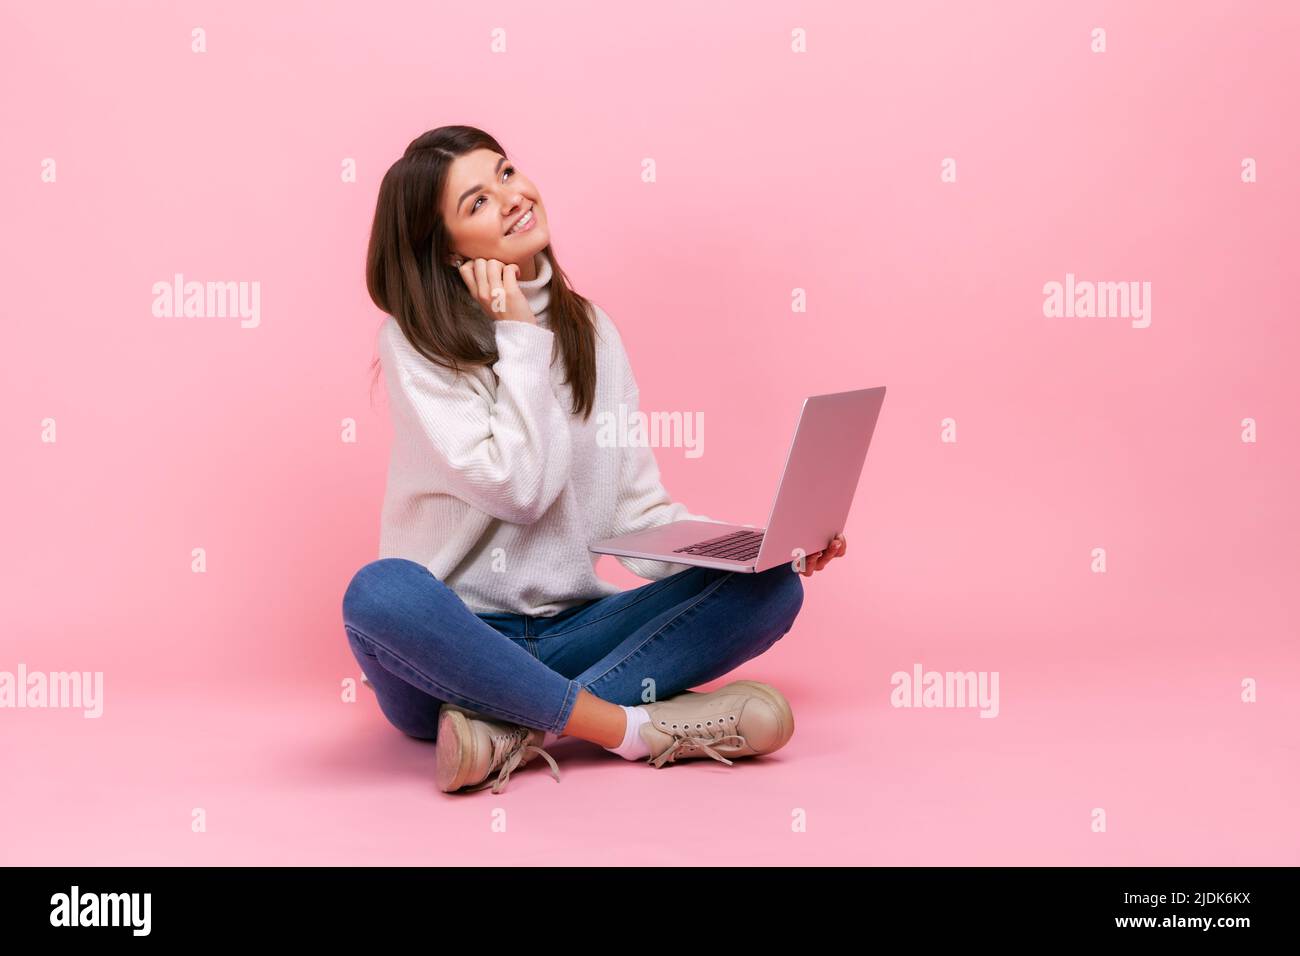 Portrait d'une femme avec une expression faciale rêveuse, assise avec des jambes croisées sur le sol, tenant un ordinateur portable, portant un pull blanc de style décontracté. Studio d'intérieur isolé sur fond rose. Banque D'Images